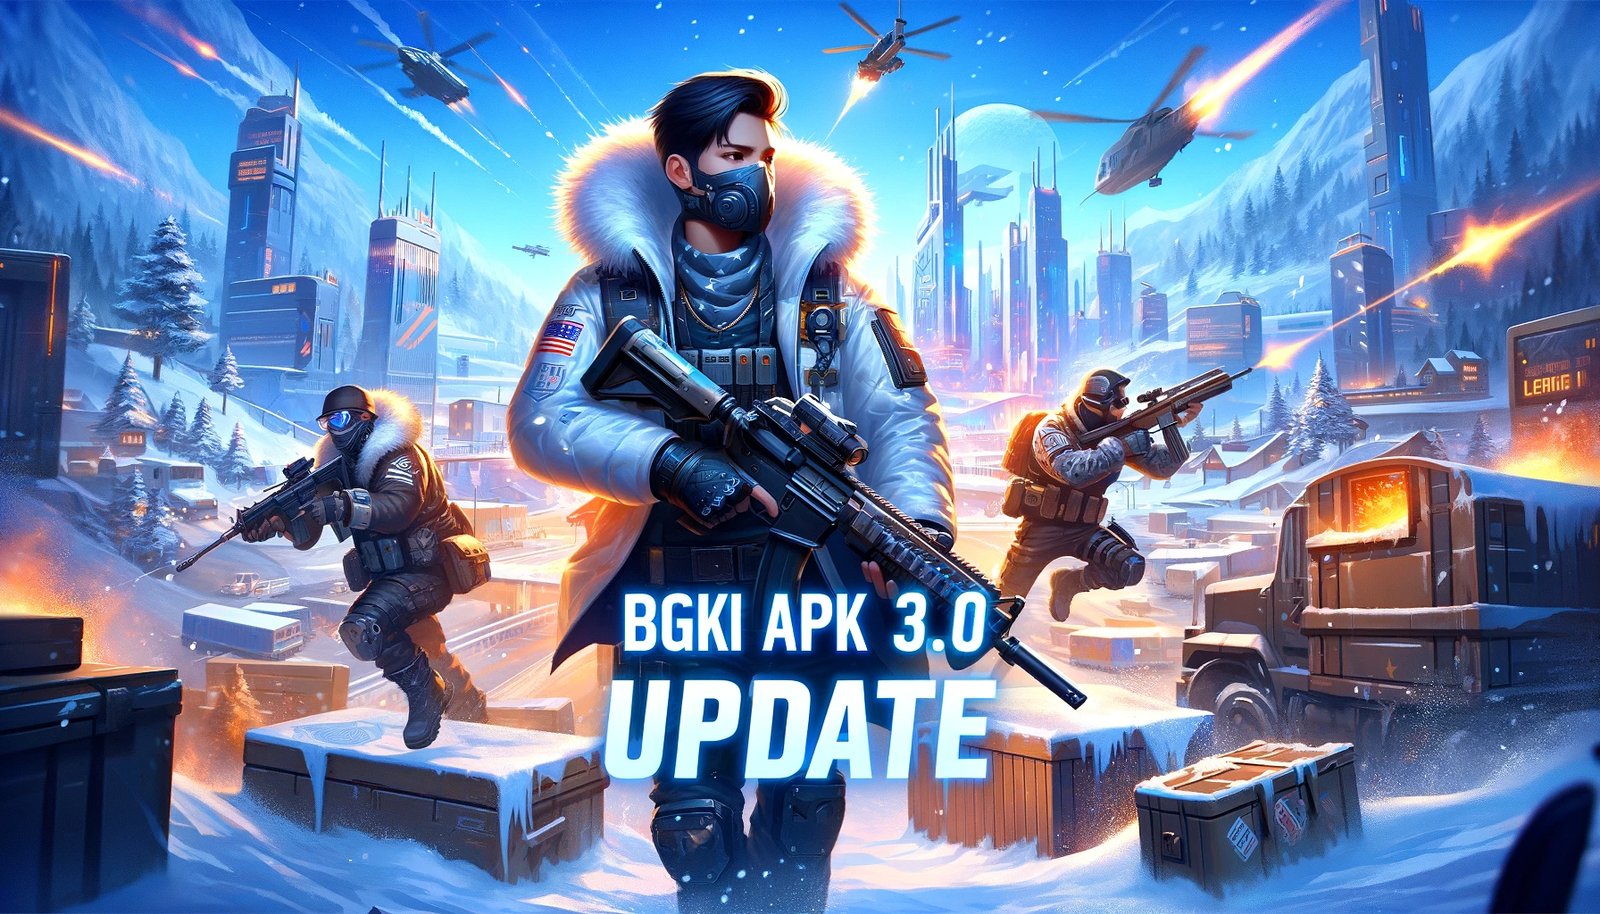 BGMI APK 3.0 Update